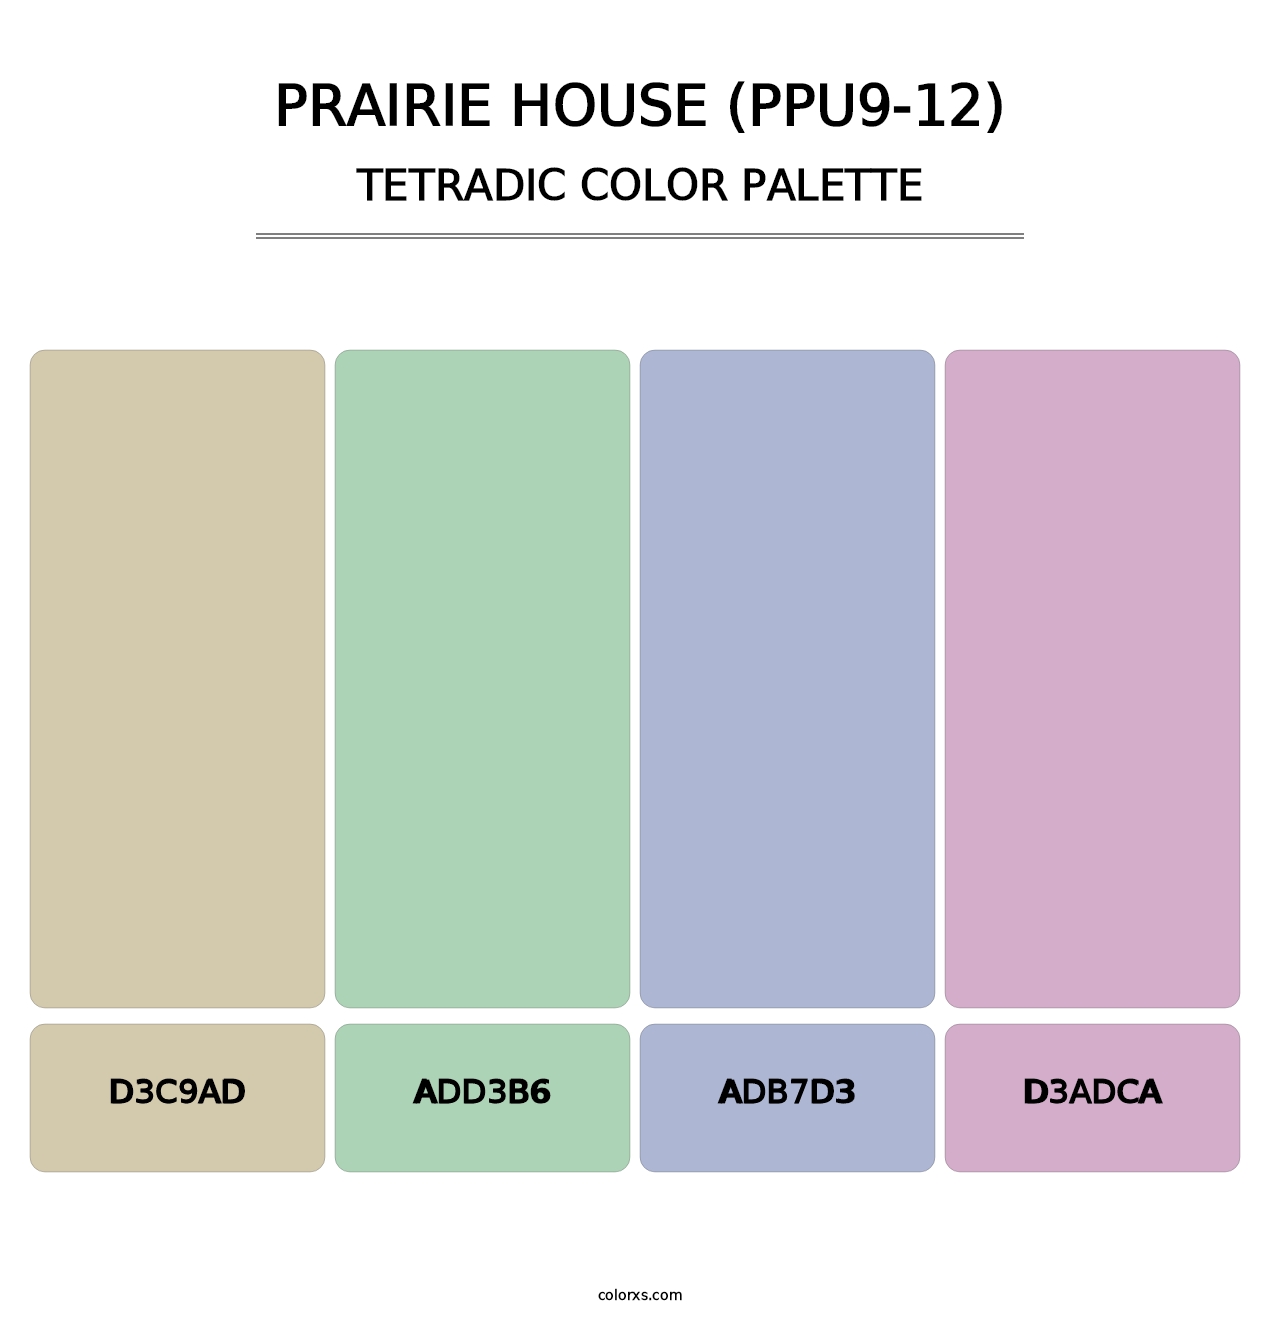 Prairie House (PPU9-12) - Tetradic Color Palette